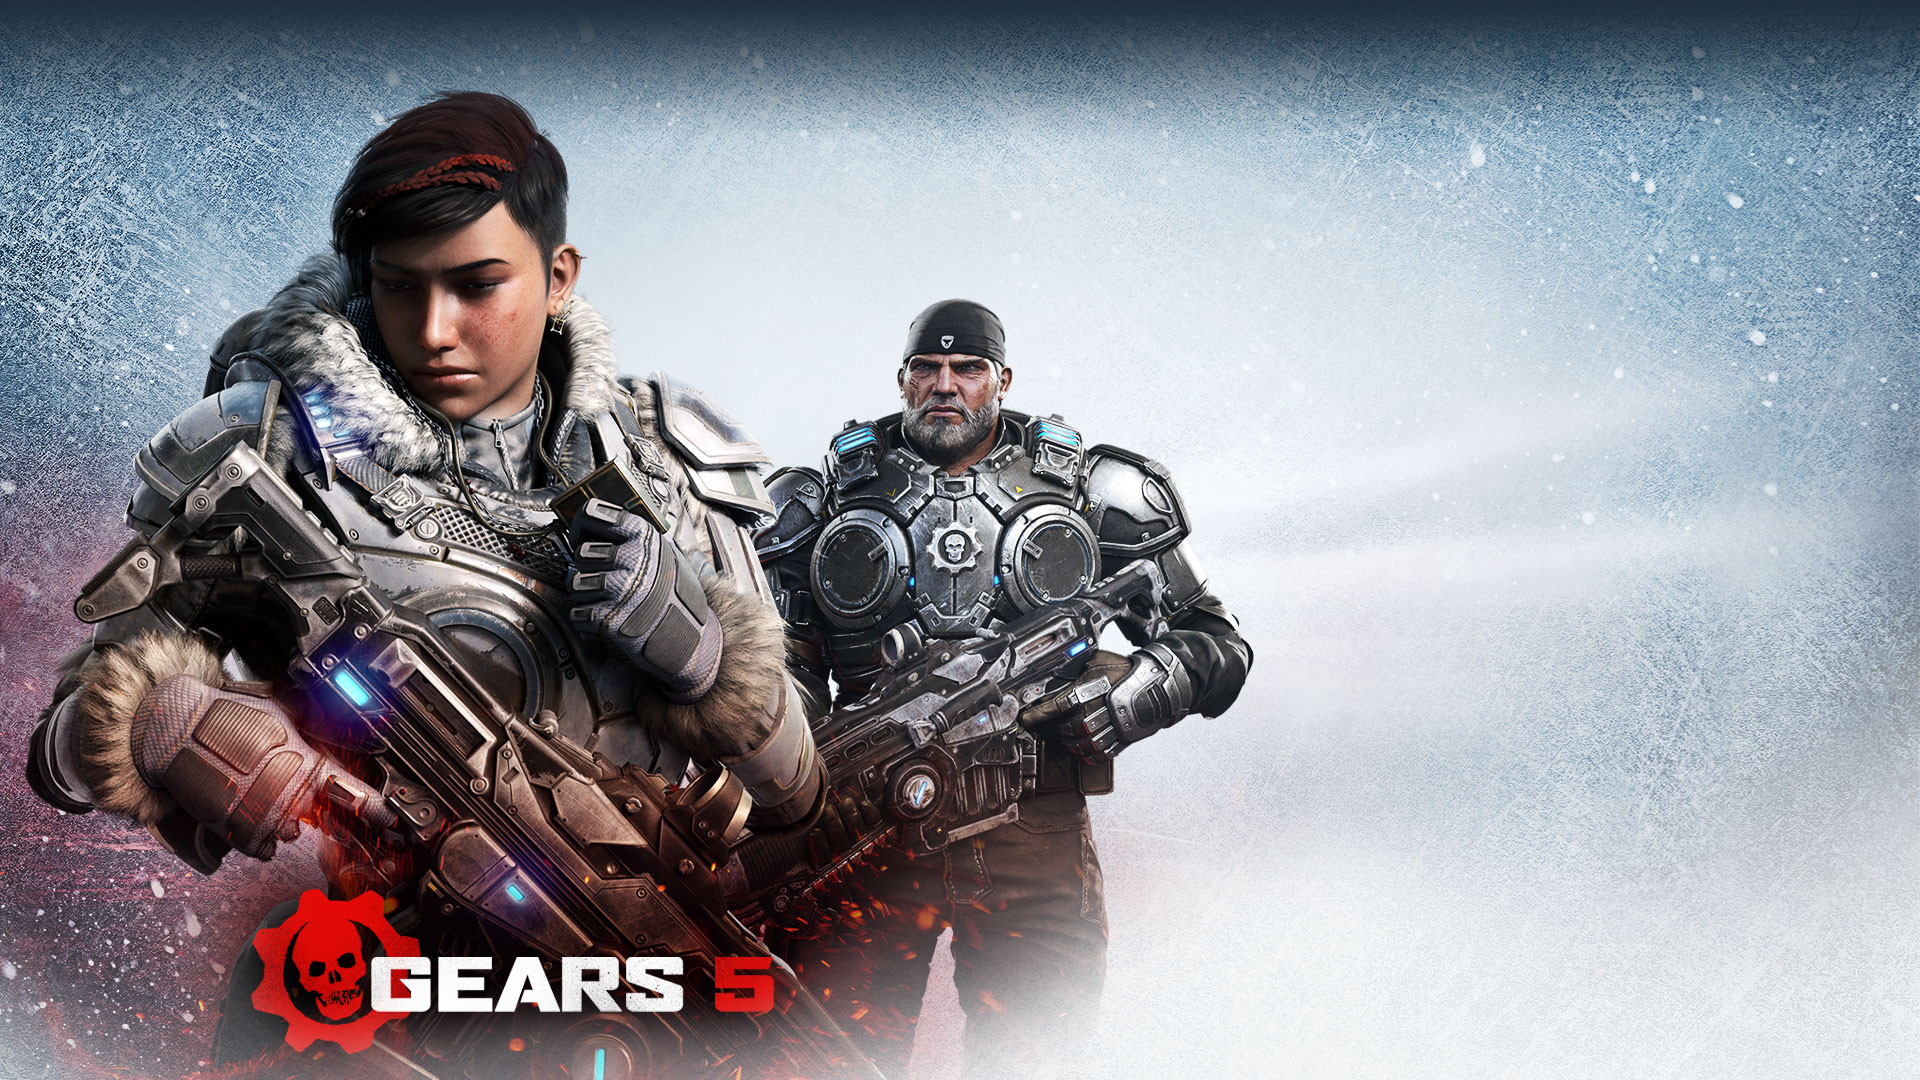 Gears 5 is eerste Xbox-titel die speelbaar is op Nvidia GeForce Now